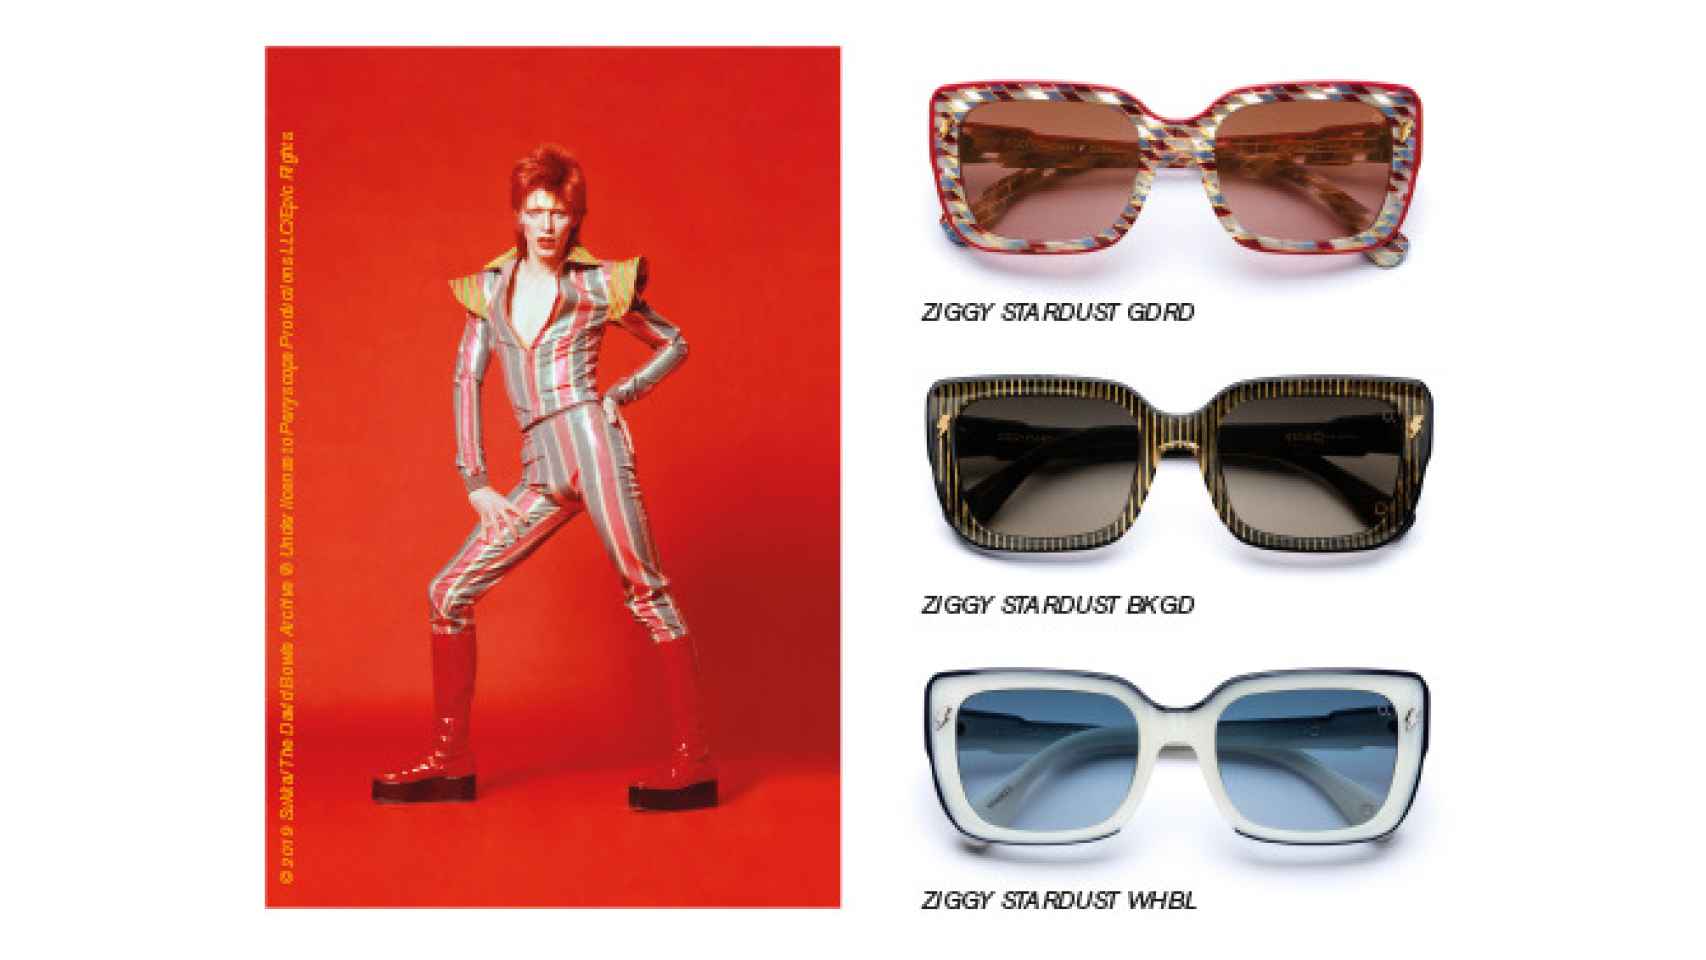 Modelo de gafas Ziggy Stardust.